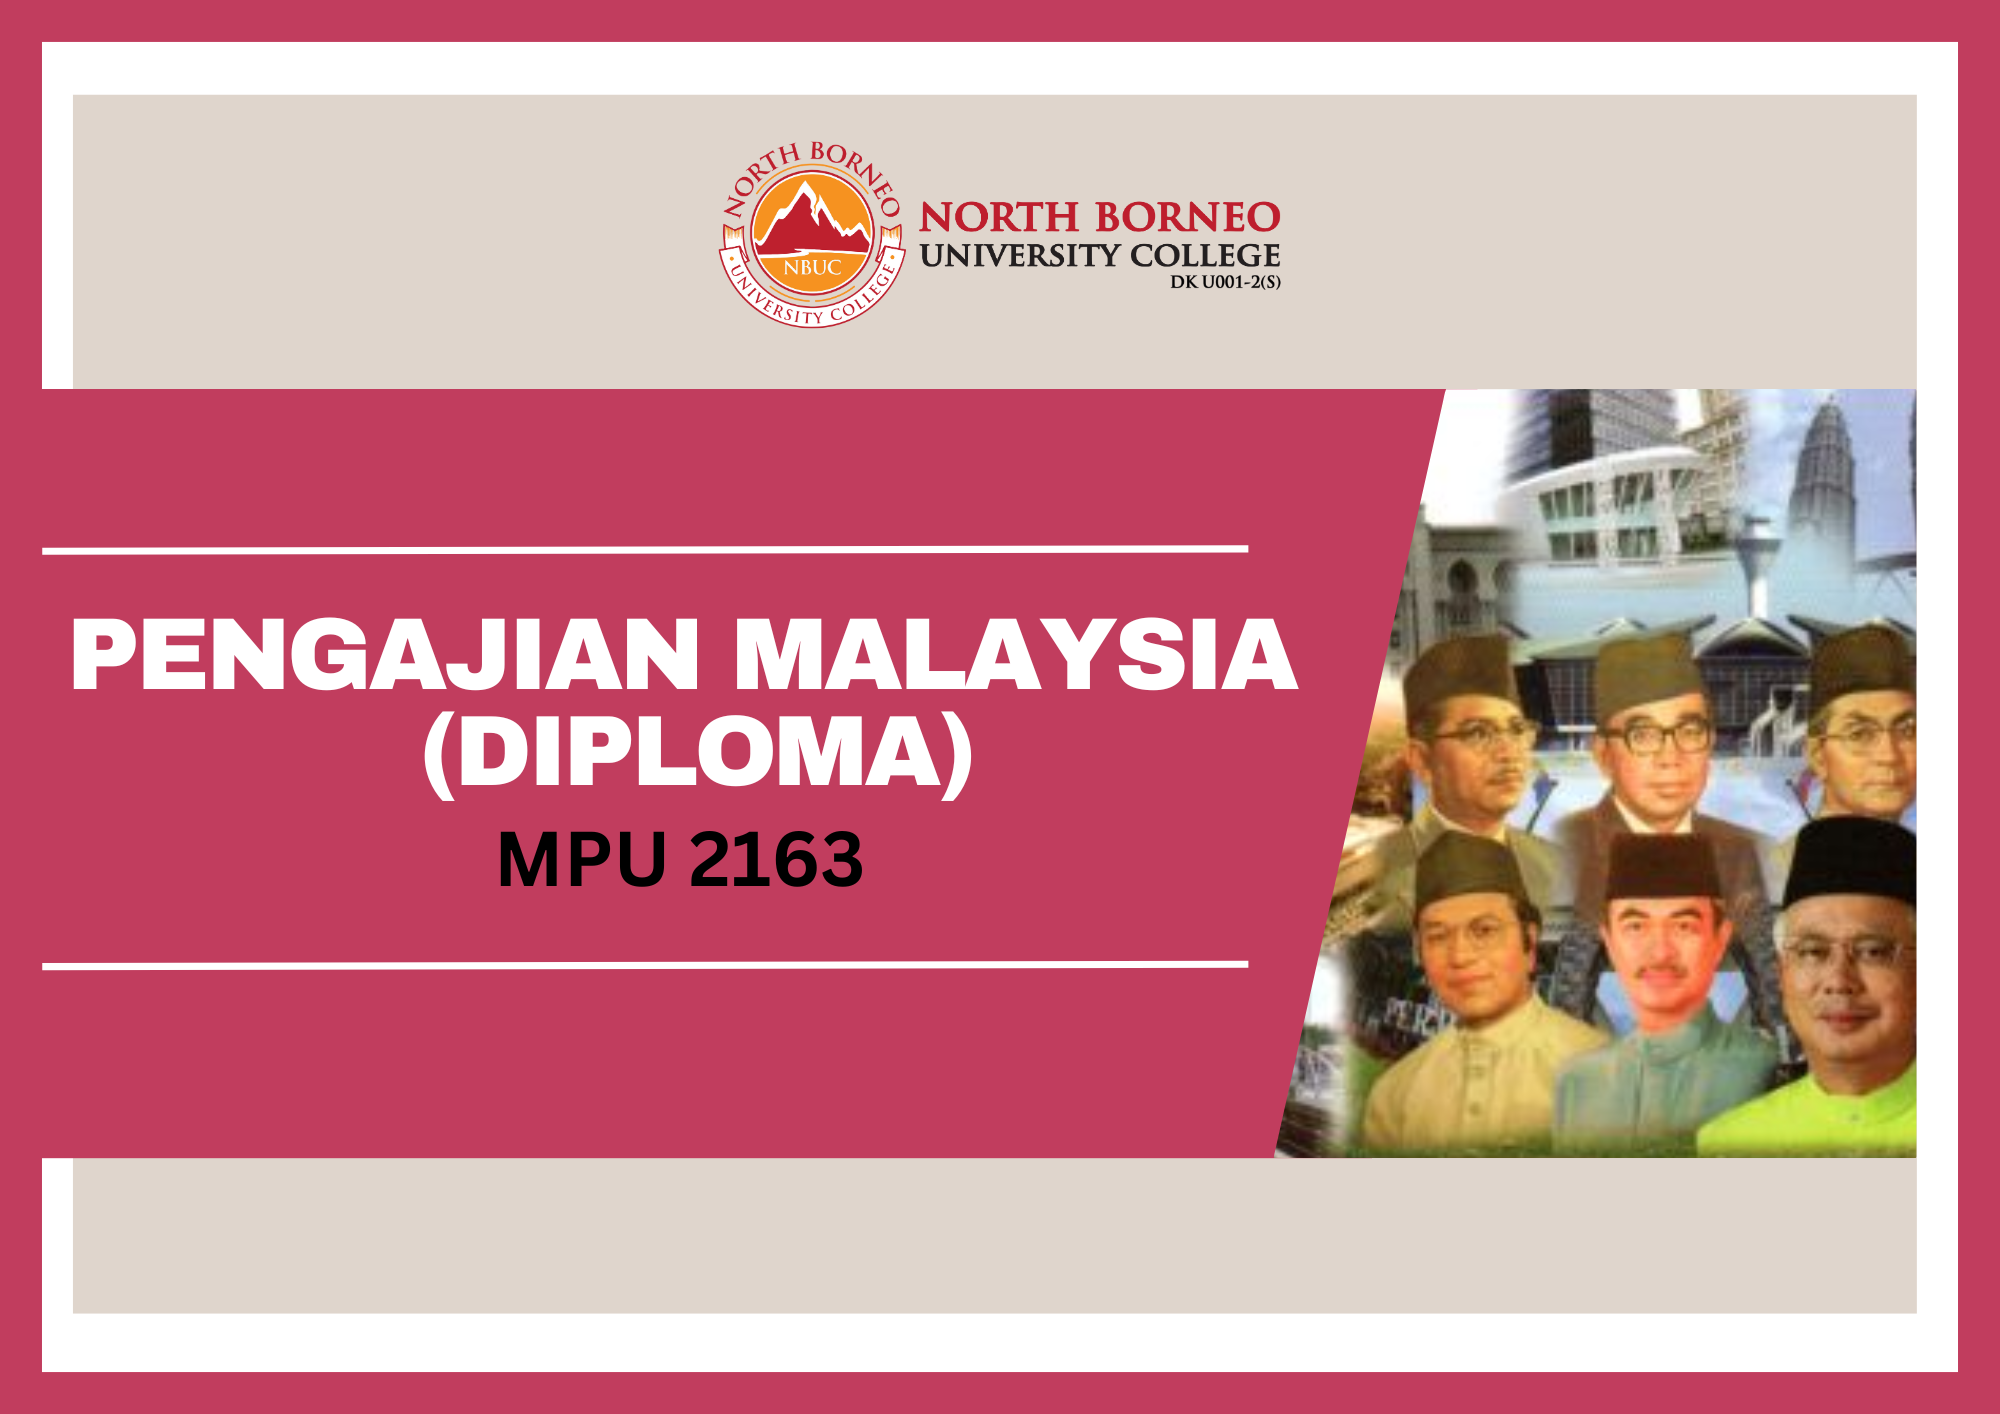 PENGAJIAN MALAYSIA 2 (DIPLOMA /MPU 2163)